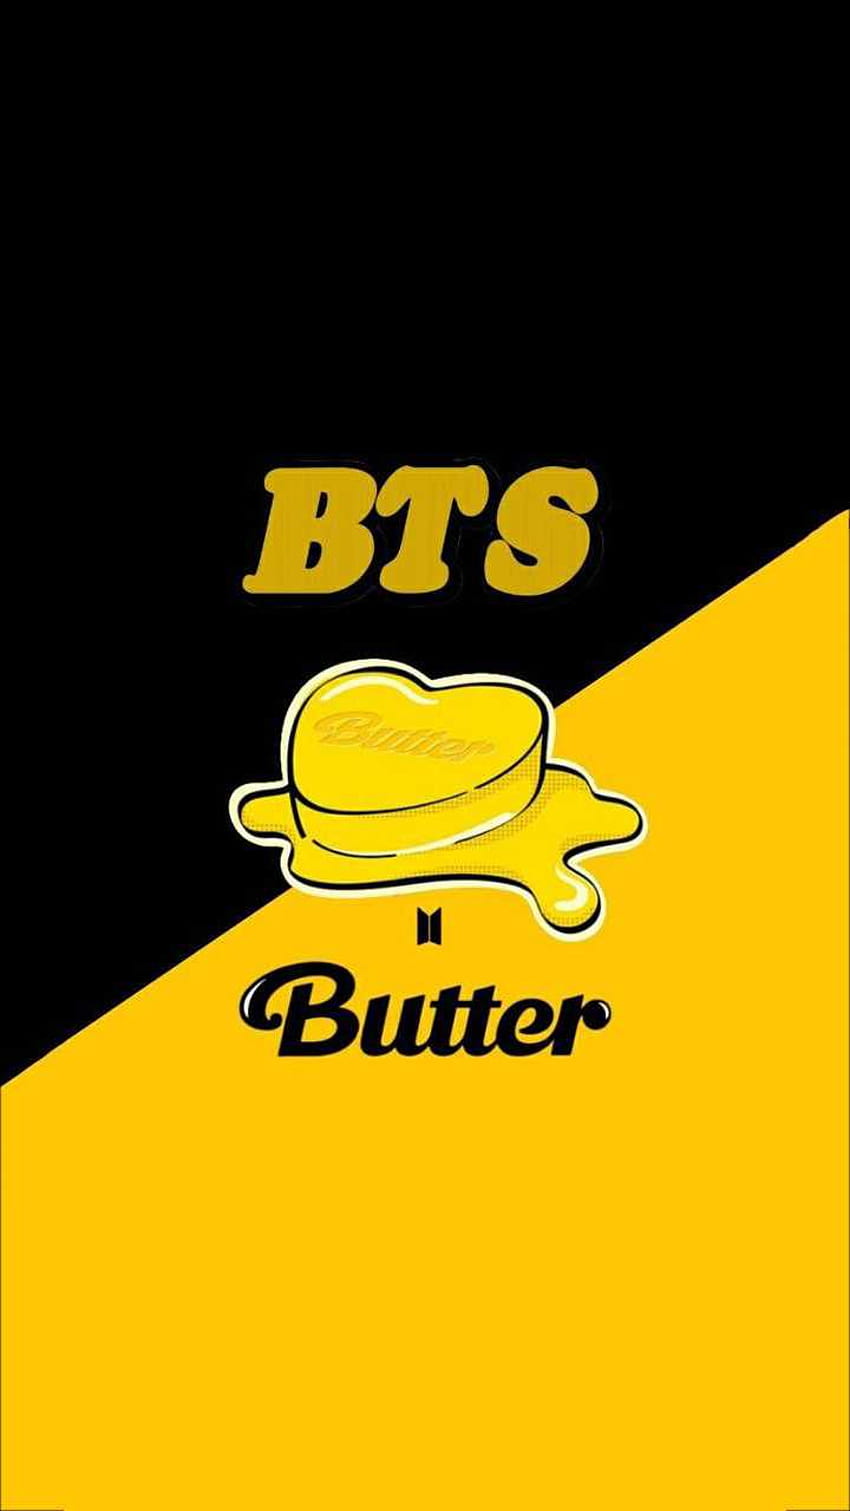 BTS Butter HD phone wallpaper | Pxfuel